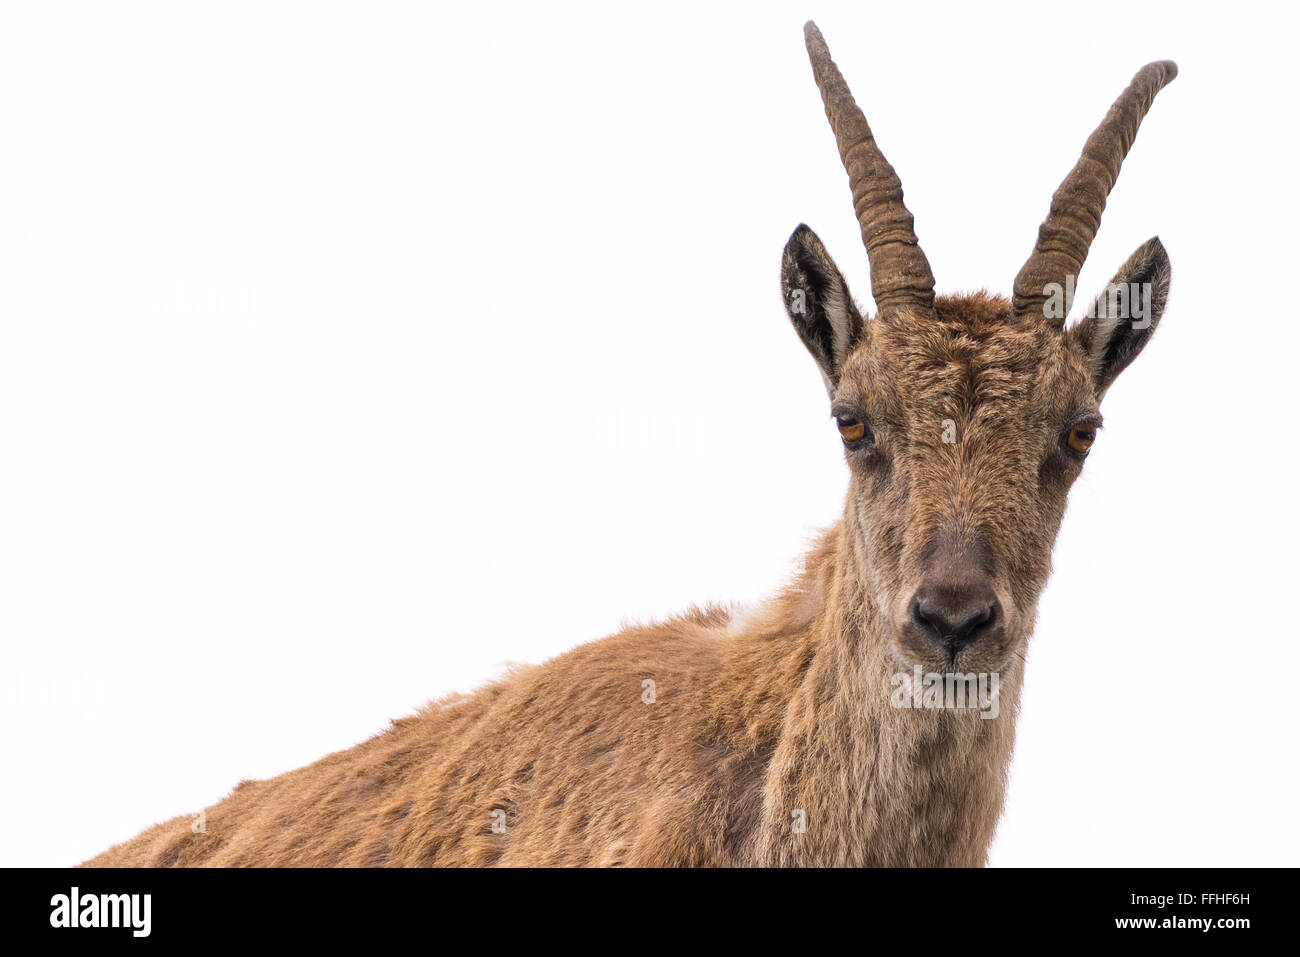 Davanti alla cintura e la vista di uno stambecco (Capra ibex) guardando la telecamera, isolato su sfondo bianco. Foto Stock